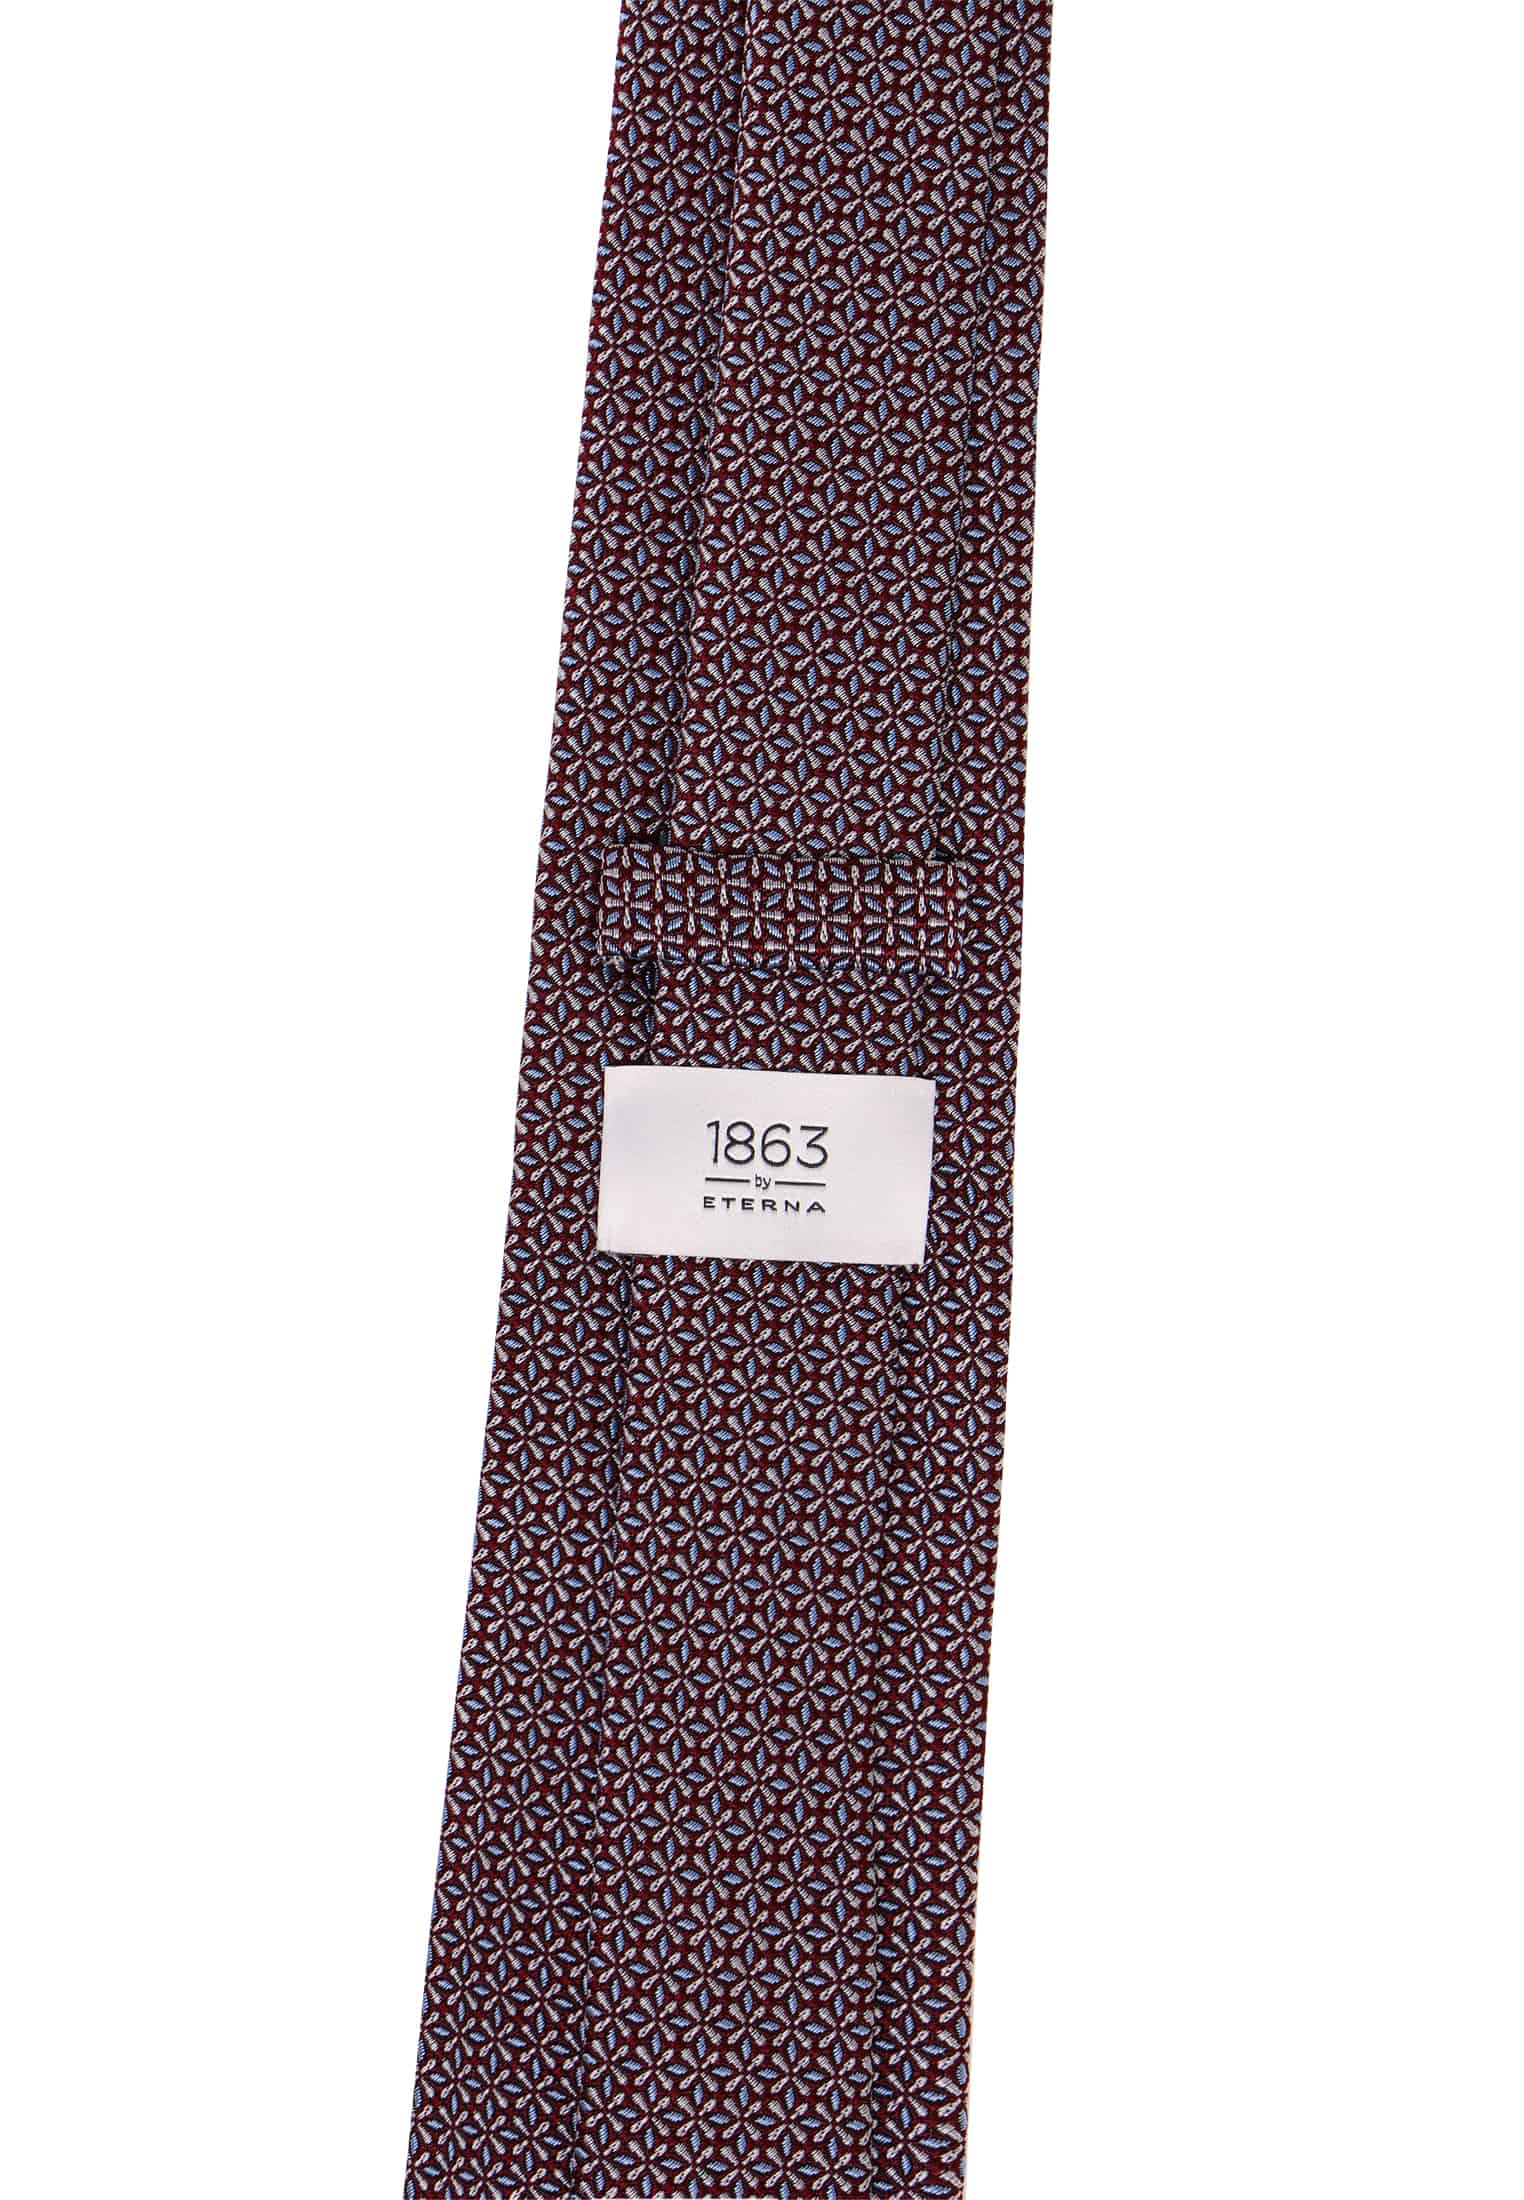 Krawatte in | braun | 142 braun 1AC02043-02-91-142 | strukturiert